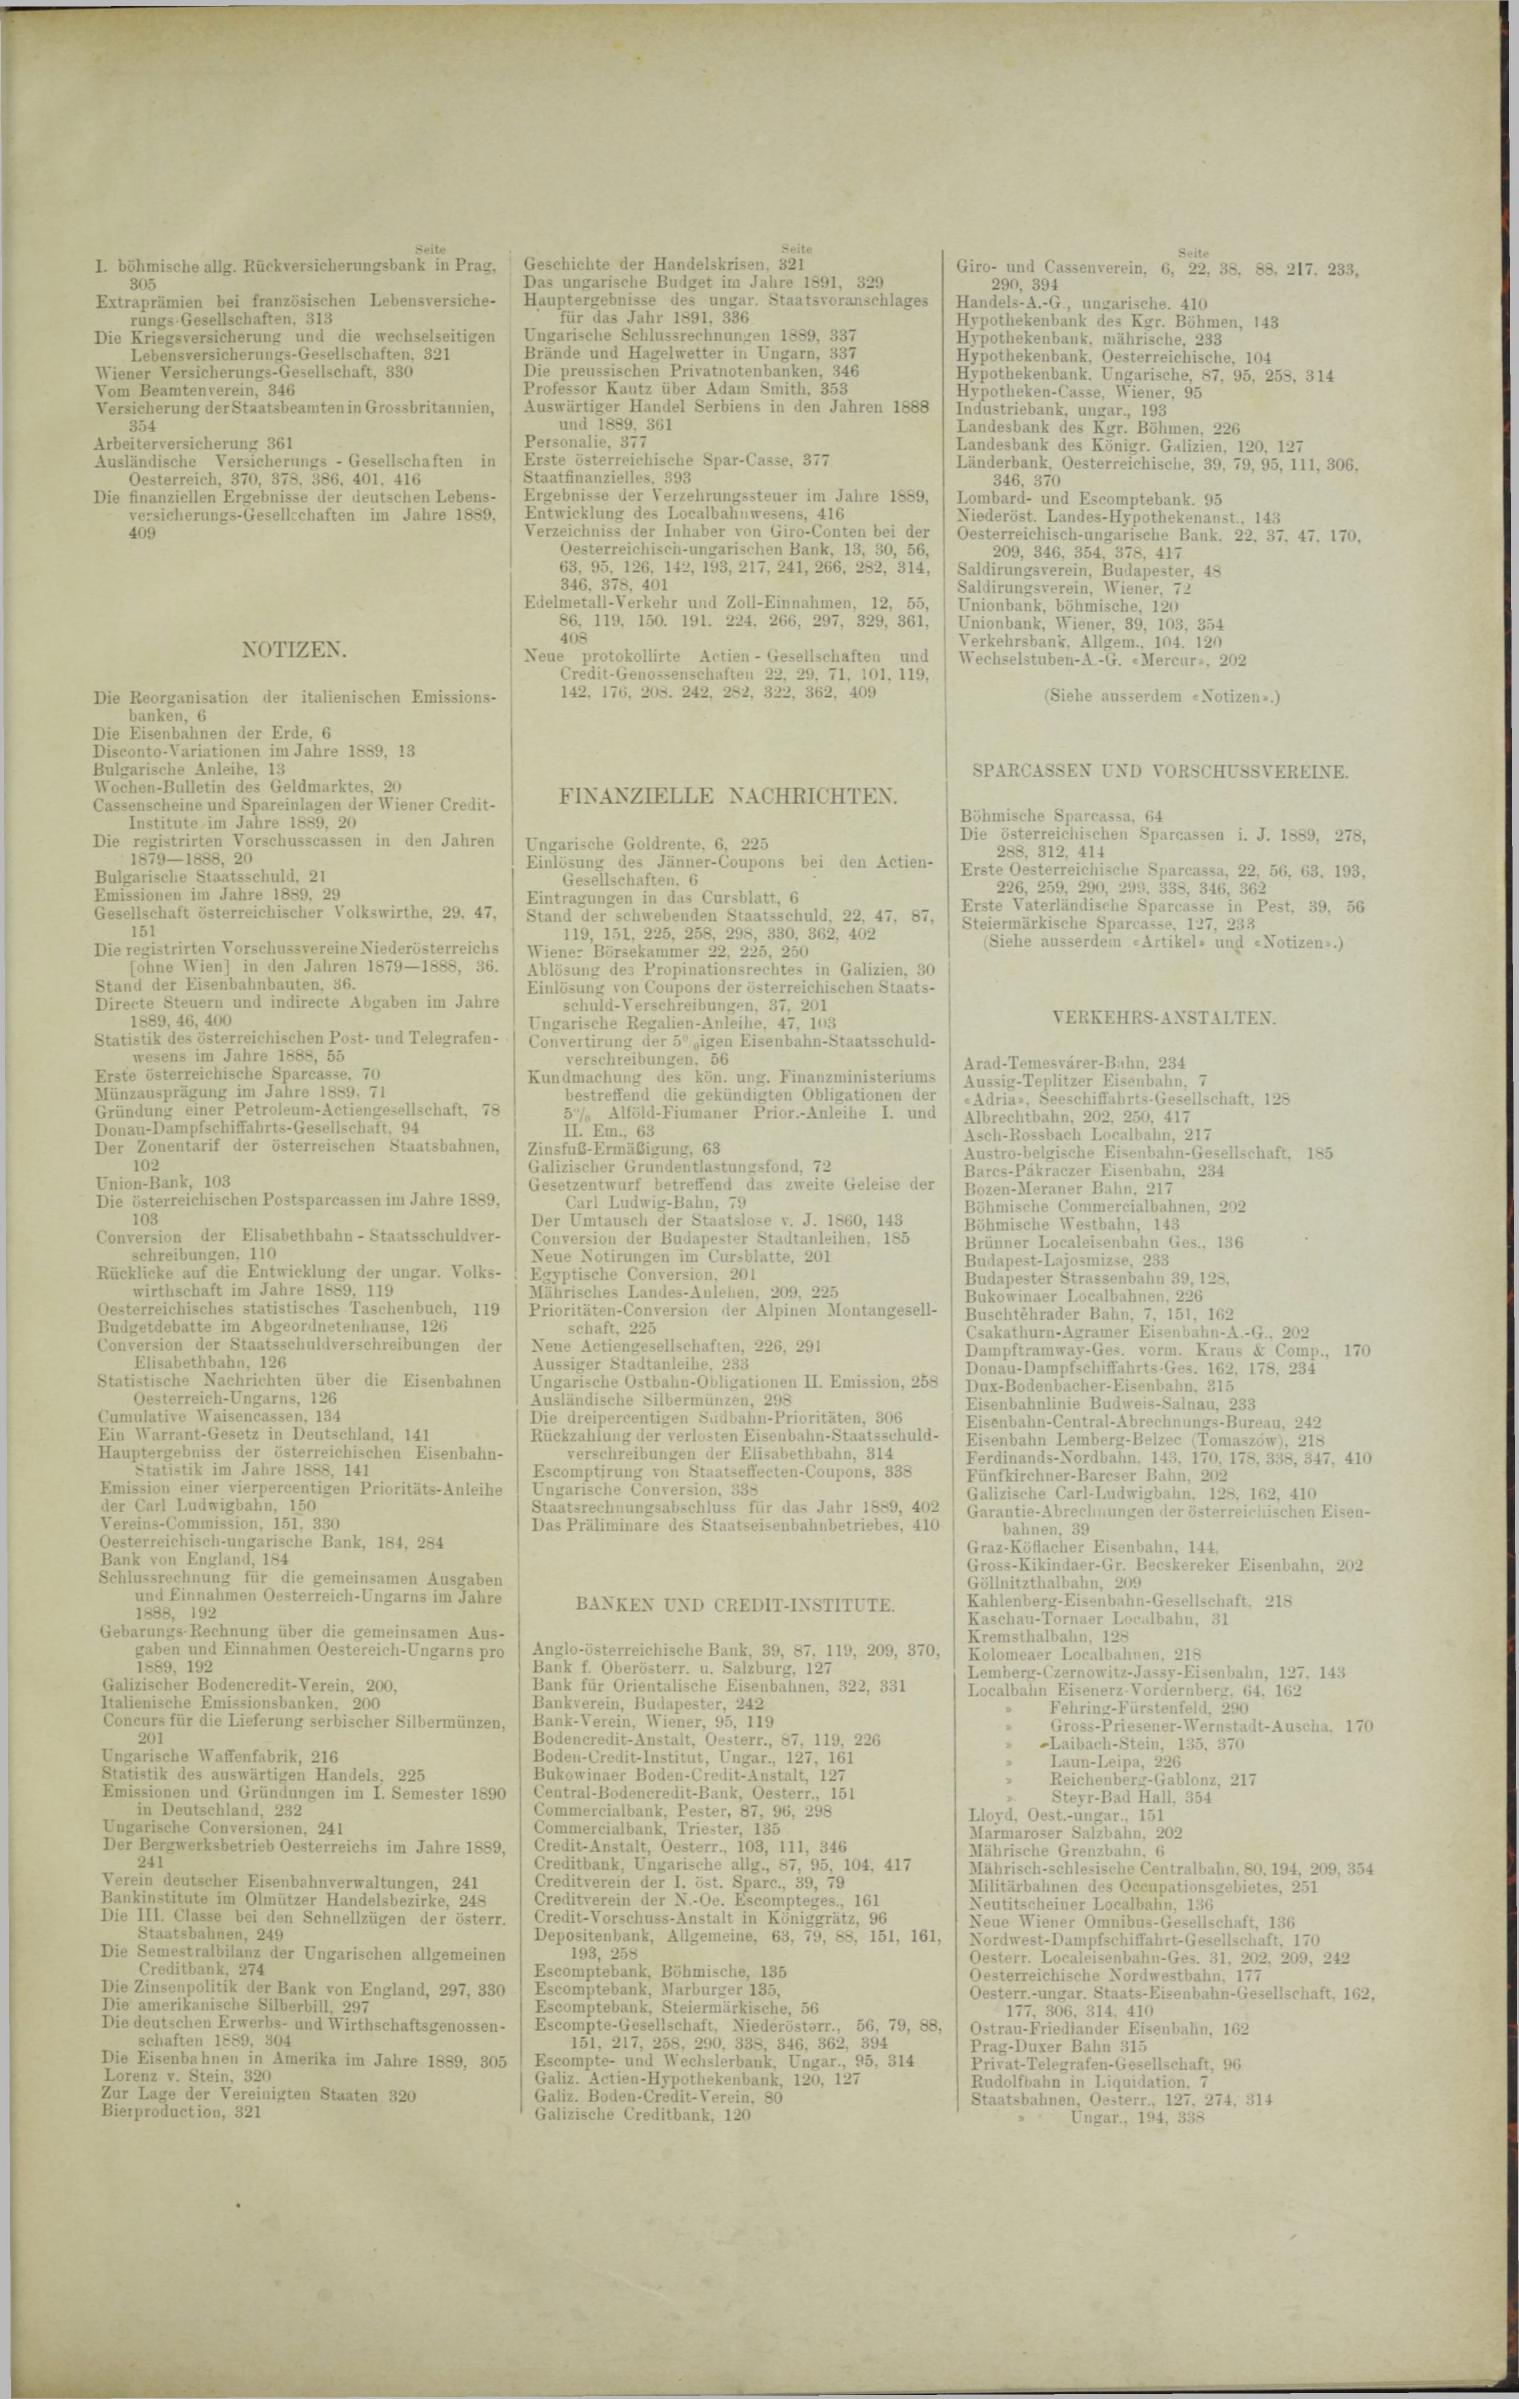 Der Tresor 18.09.1890 - Seite 11